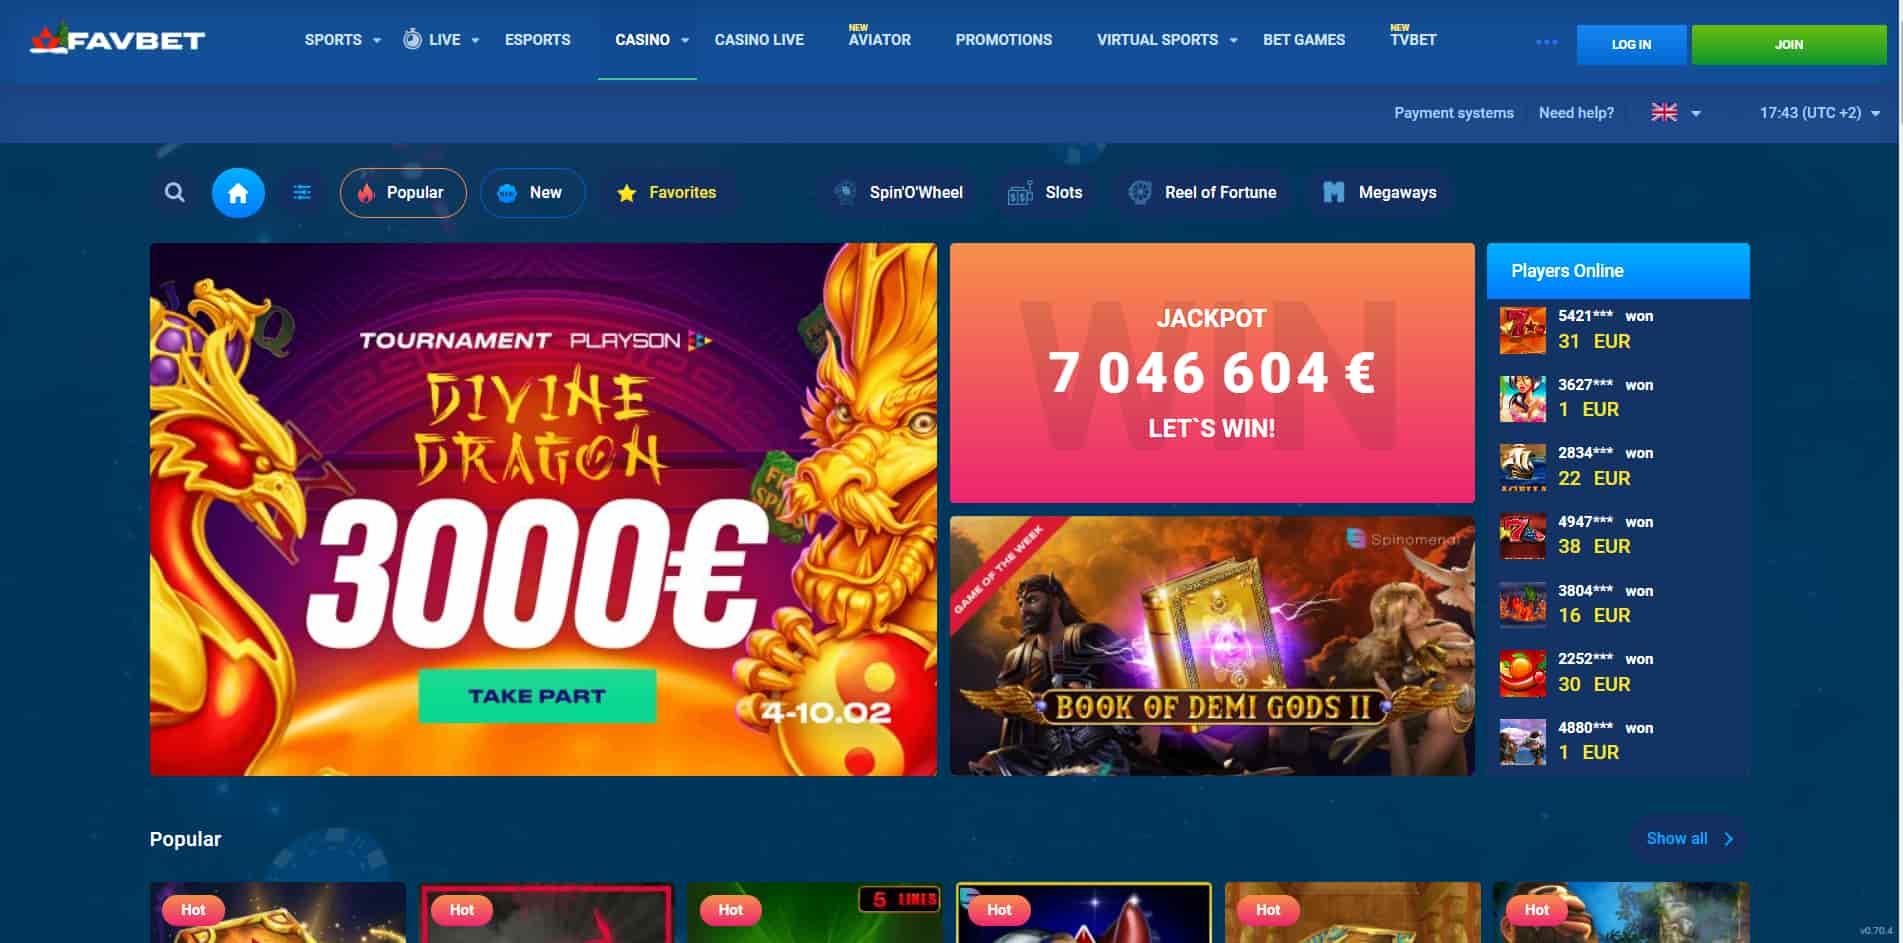 FavBet casino homepage